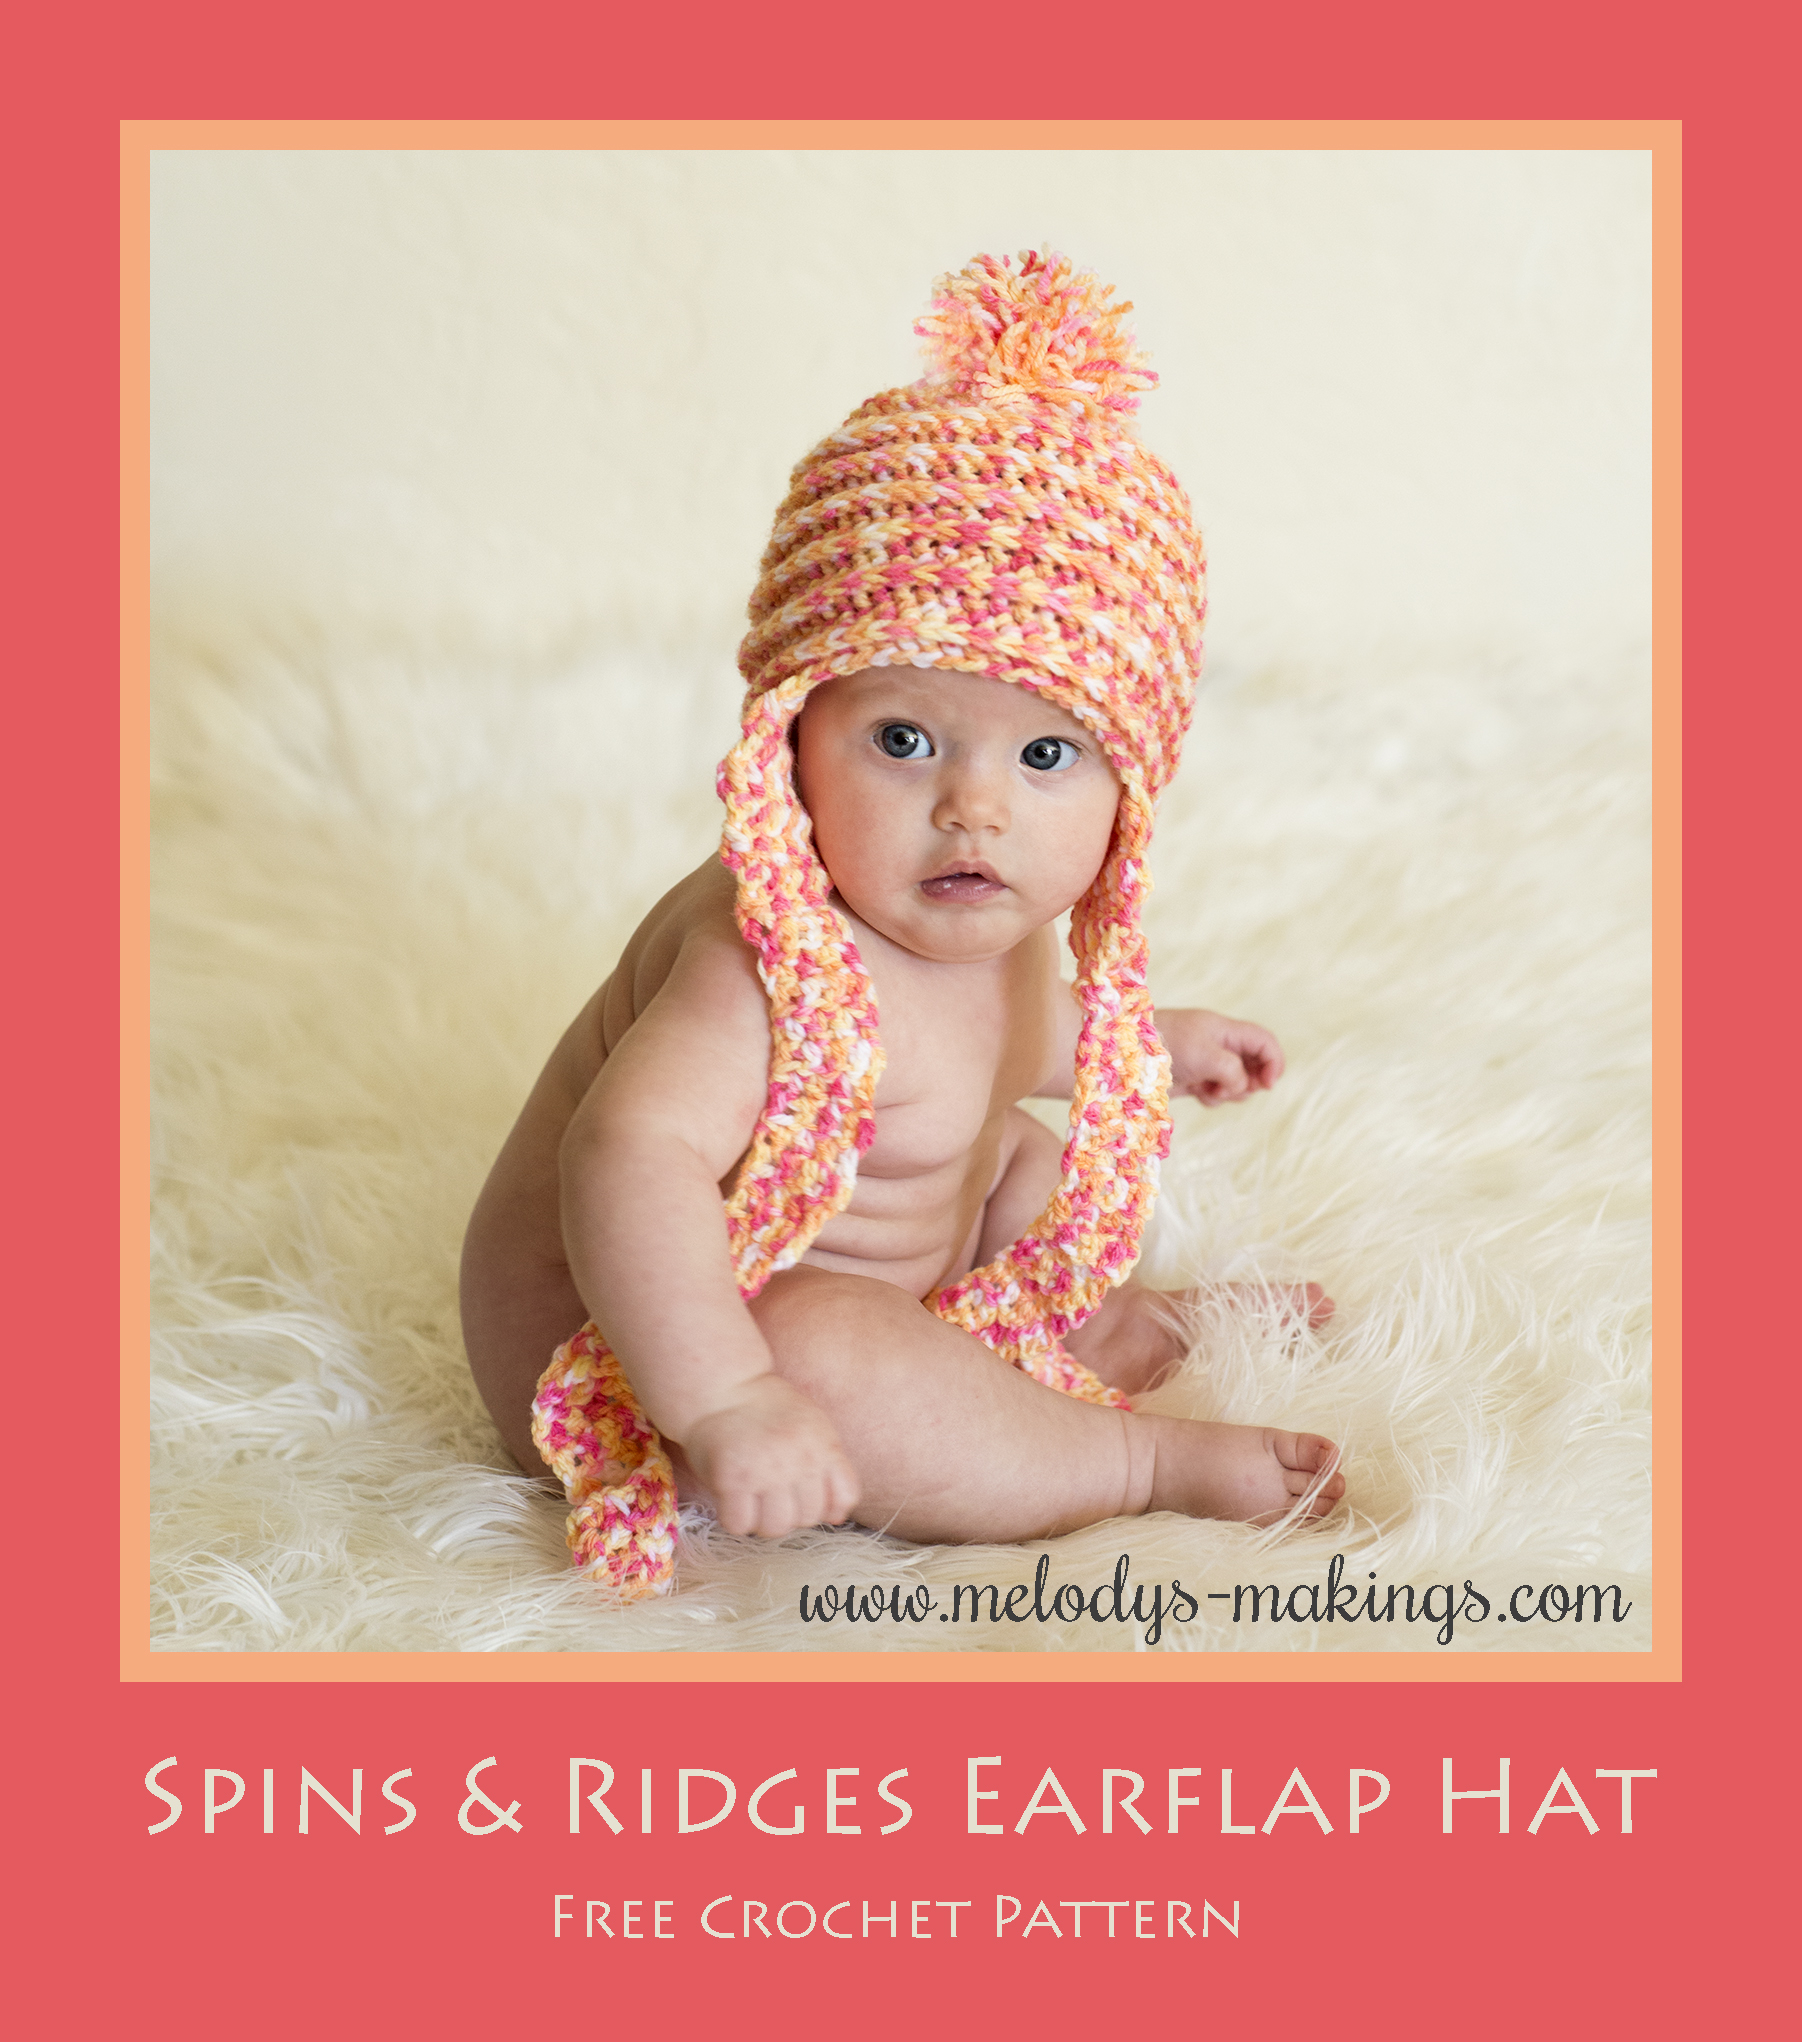 Baby Earflap Hat Knitting Pattern Another Fun Freebie Knit Crochet Melodys Makings